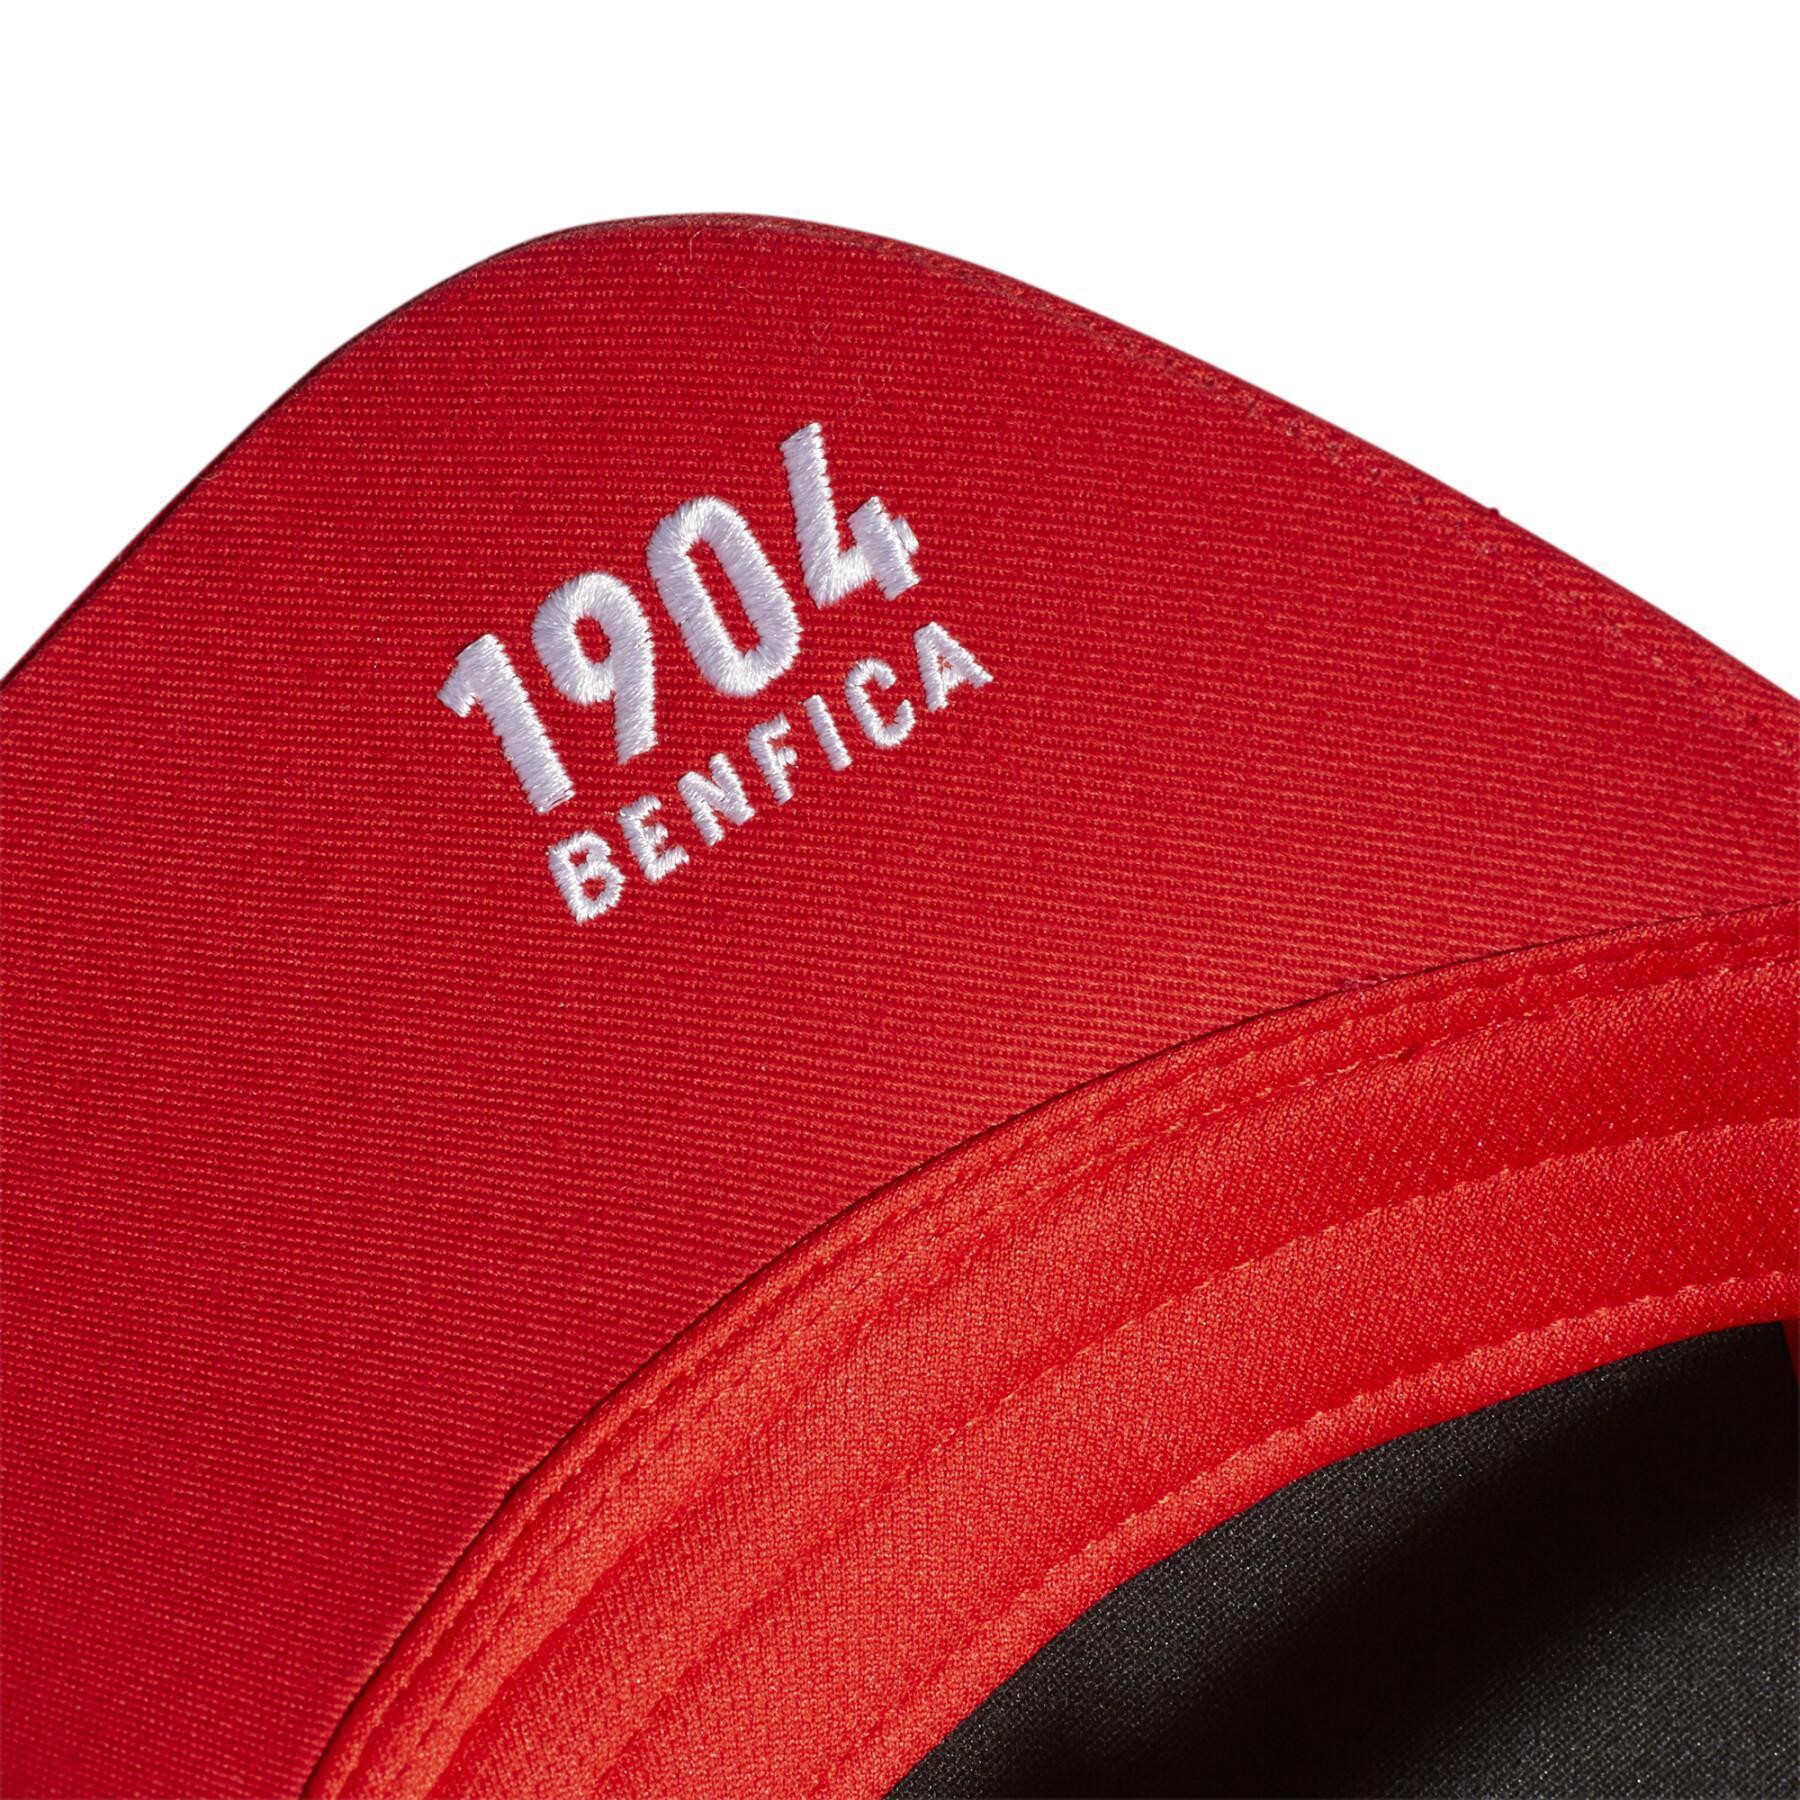 Cap sl Benfica